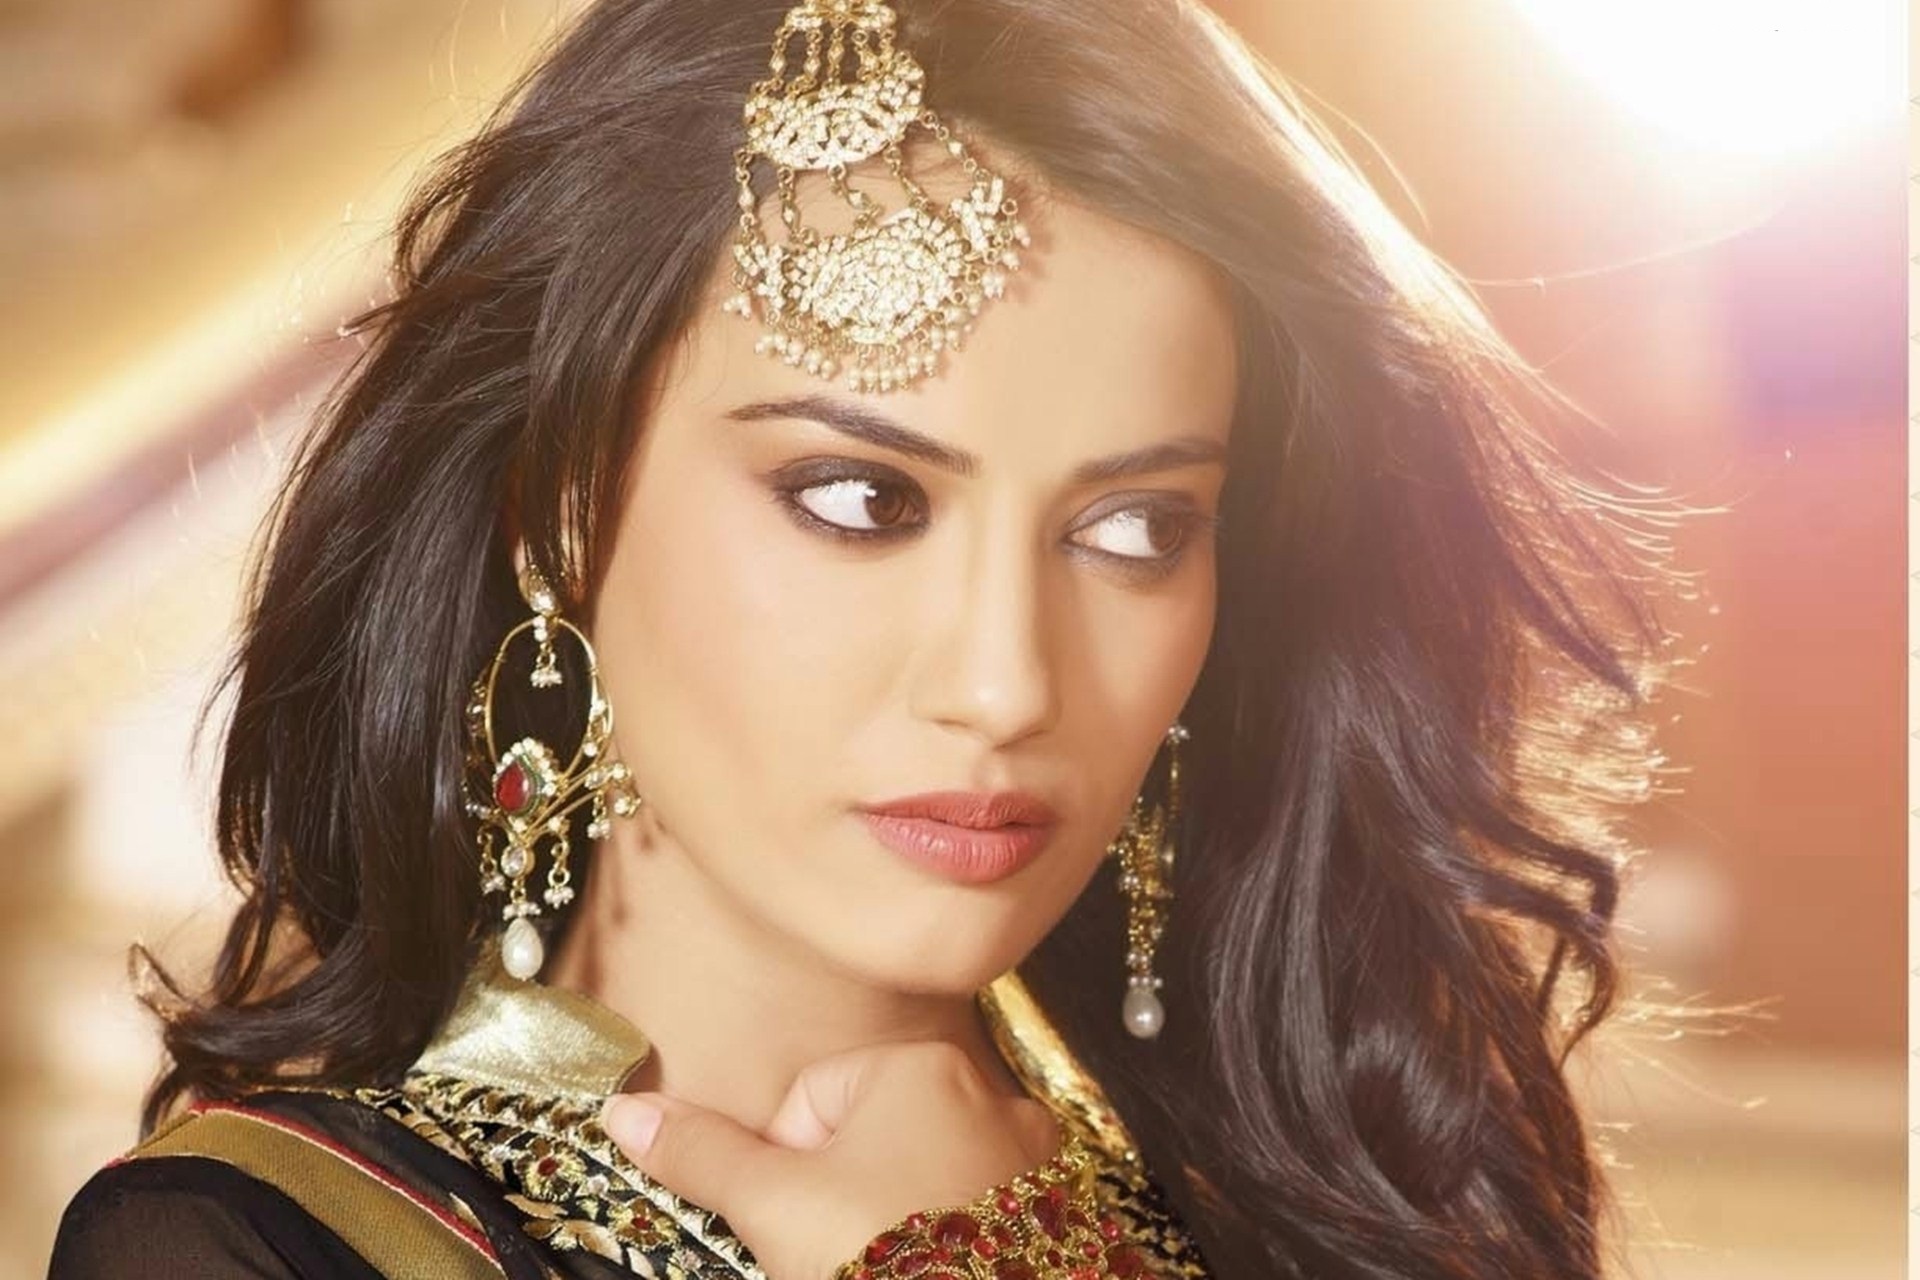 Top 10 Hot Beautiful Indian TV Actresses